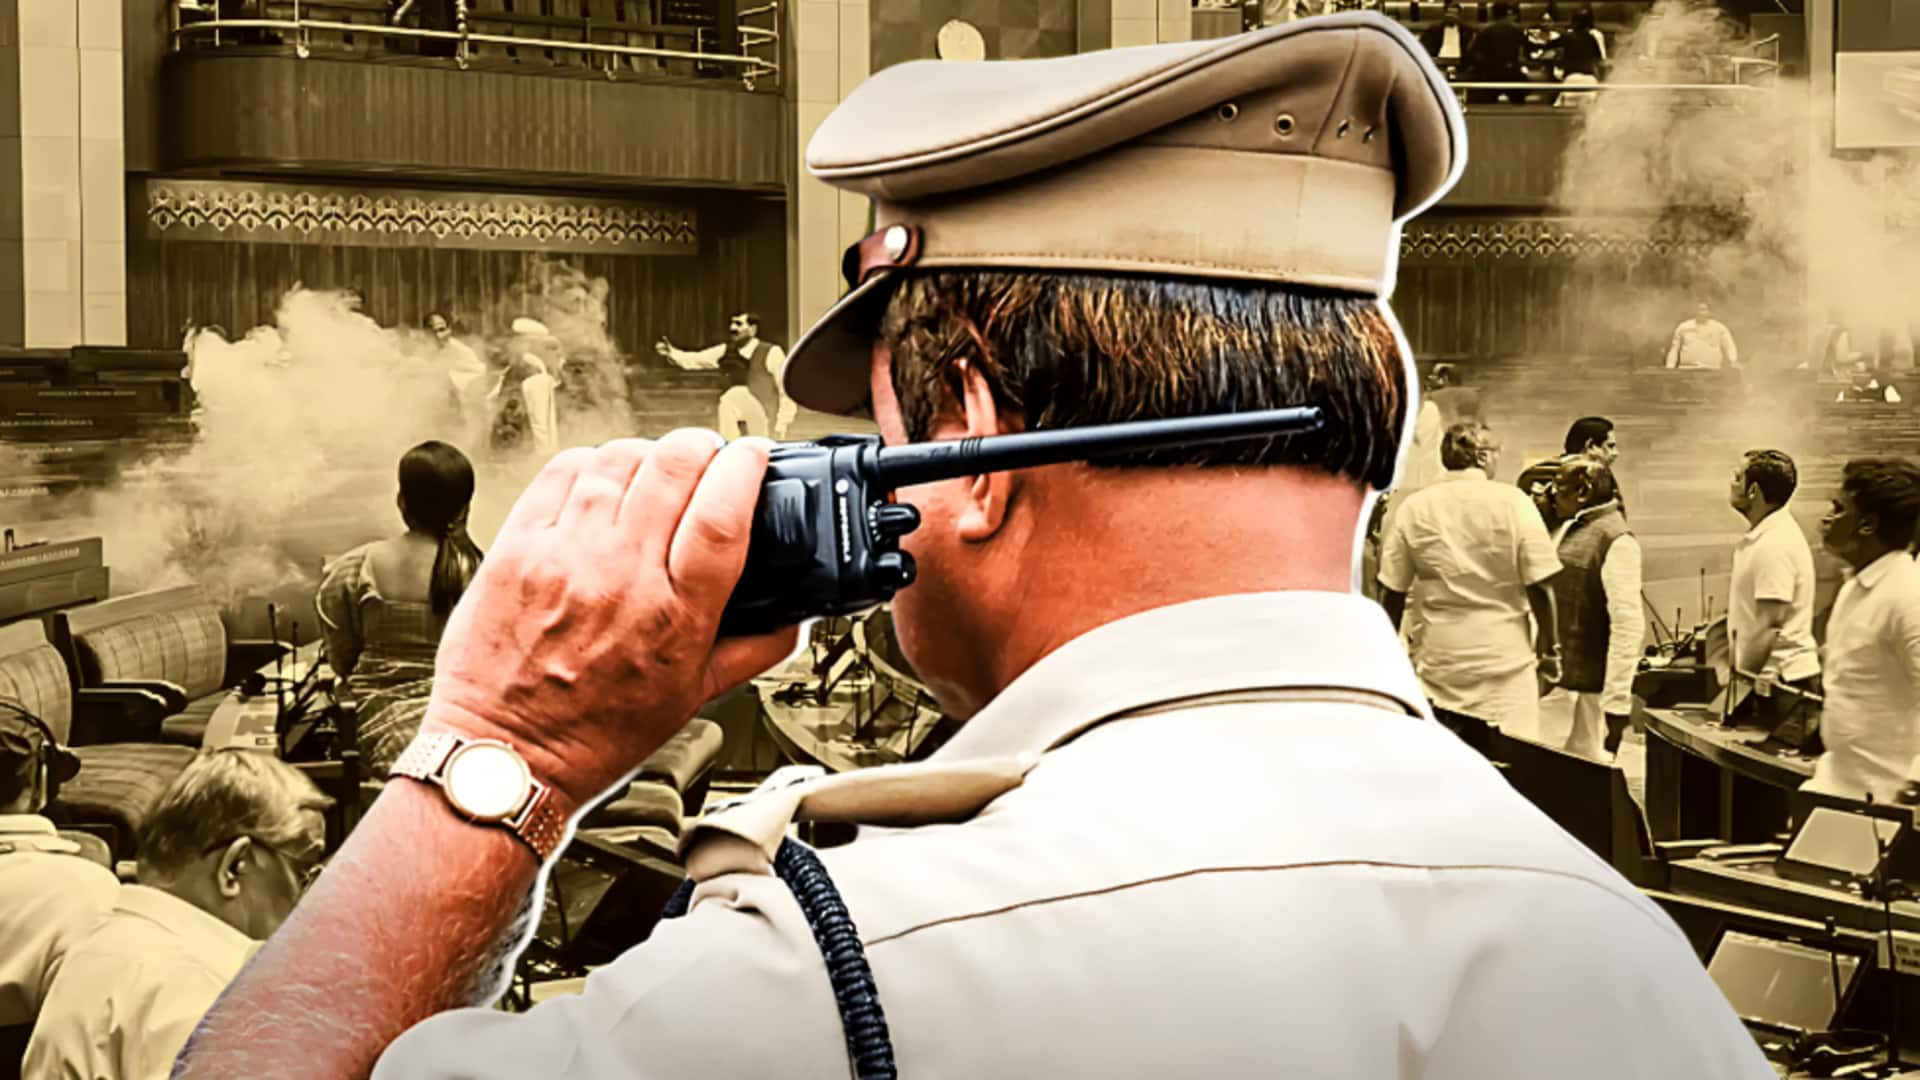 संसद की सुरक्षा में चूक: दिल्ली पुलिस को जांच के लिए अतिरिक्त 45 दिन मिले